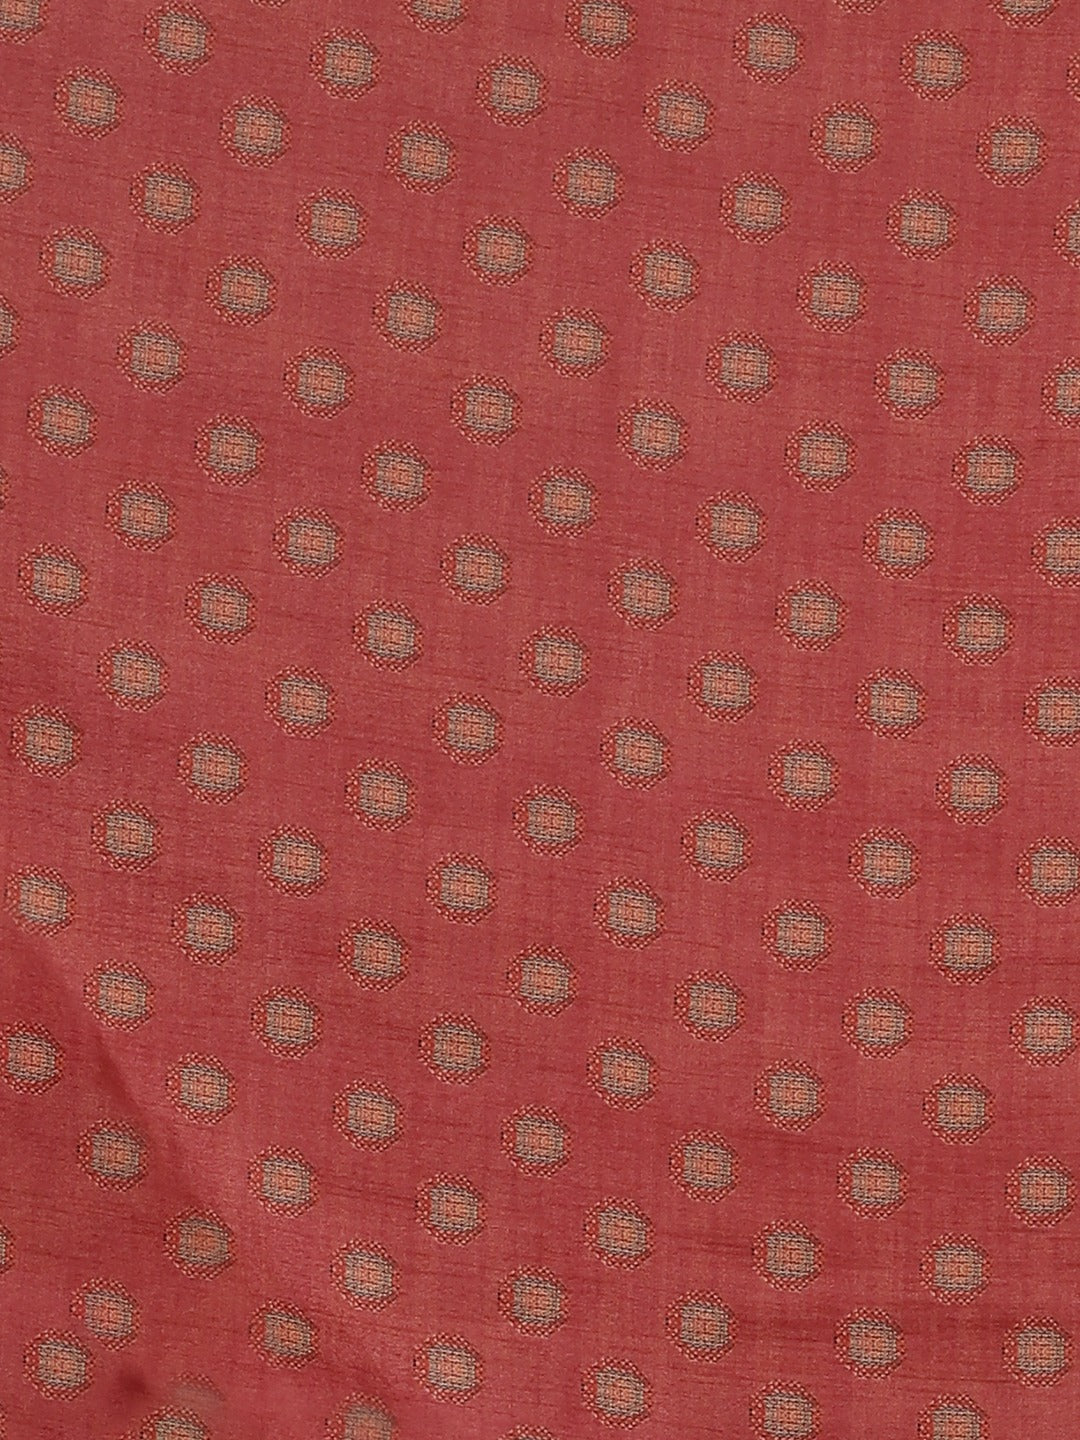 Neeru's Peach Printed Saree With Blouse